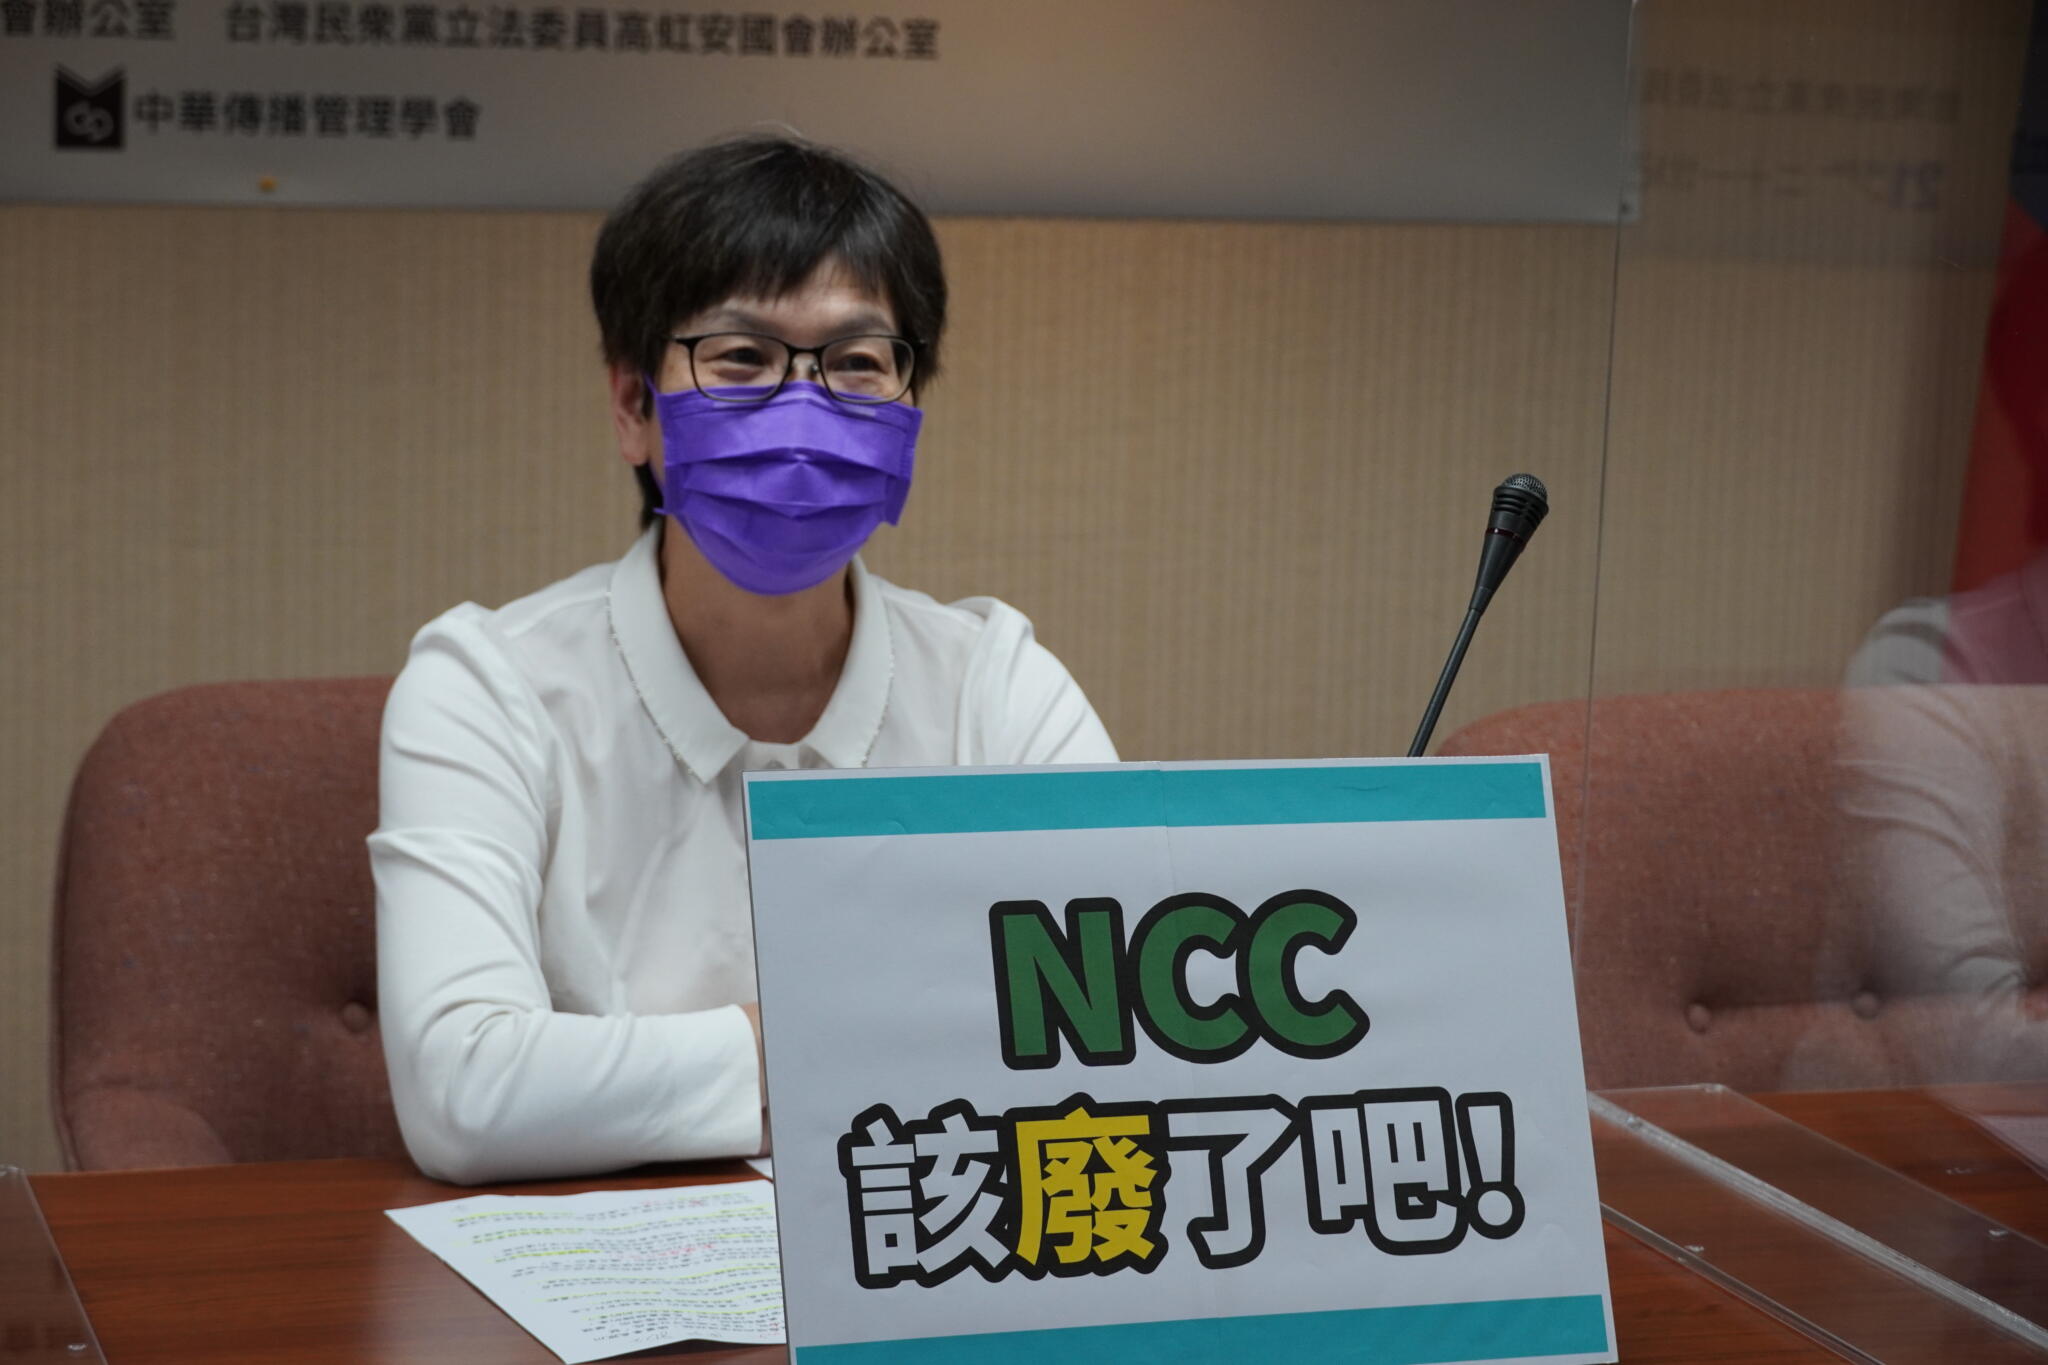 質疑NCC委員名單 蔡壁如：違背當初組織法中規範的宗旨